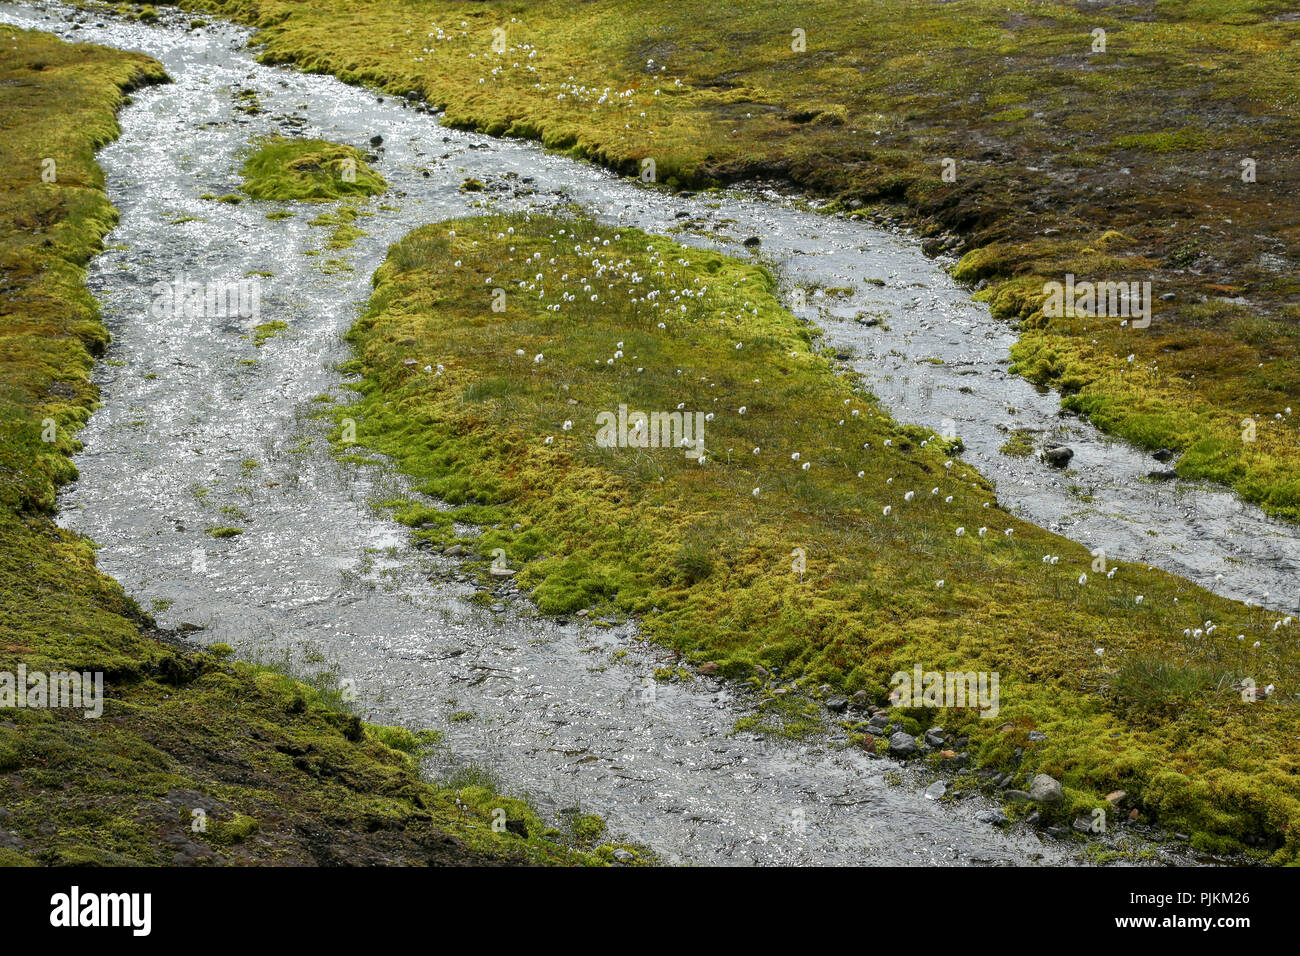 Island, Baumwolle gras wiese auf einer Insel in einem Abschied stream Stockfoto